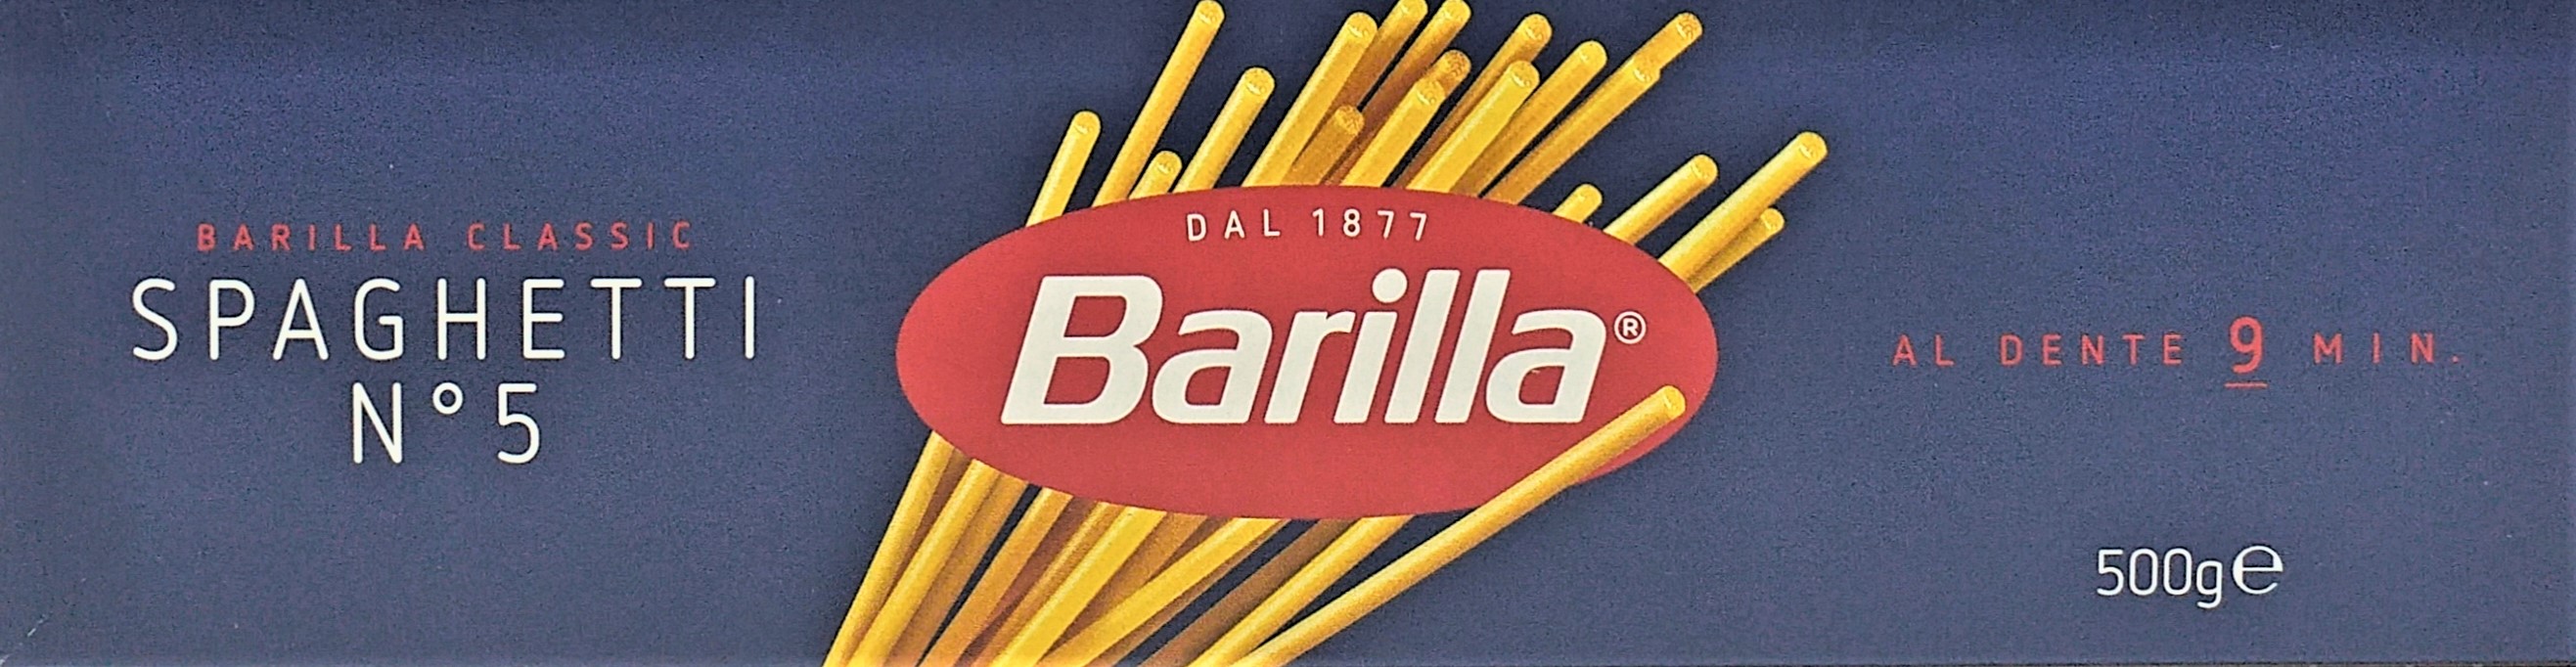 Barilla Nudeln Spaghetti No.5 500g